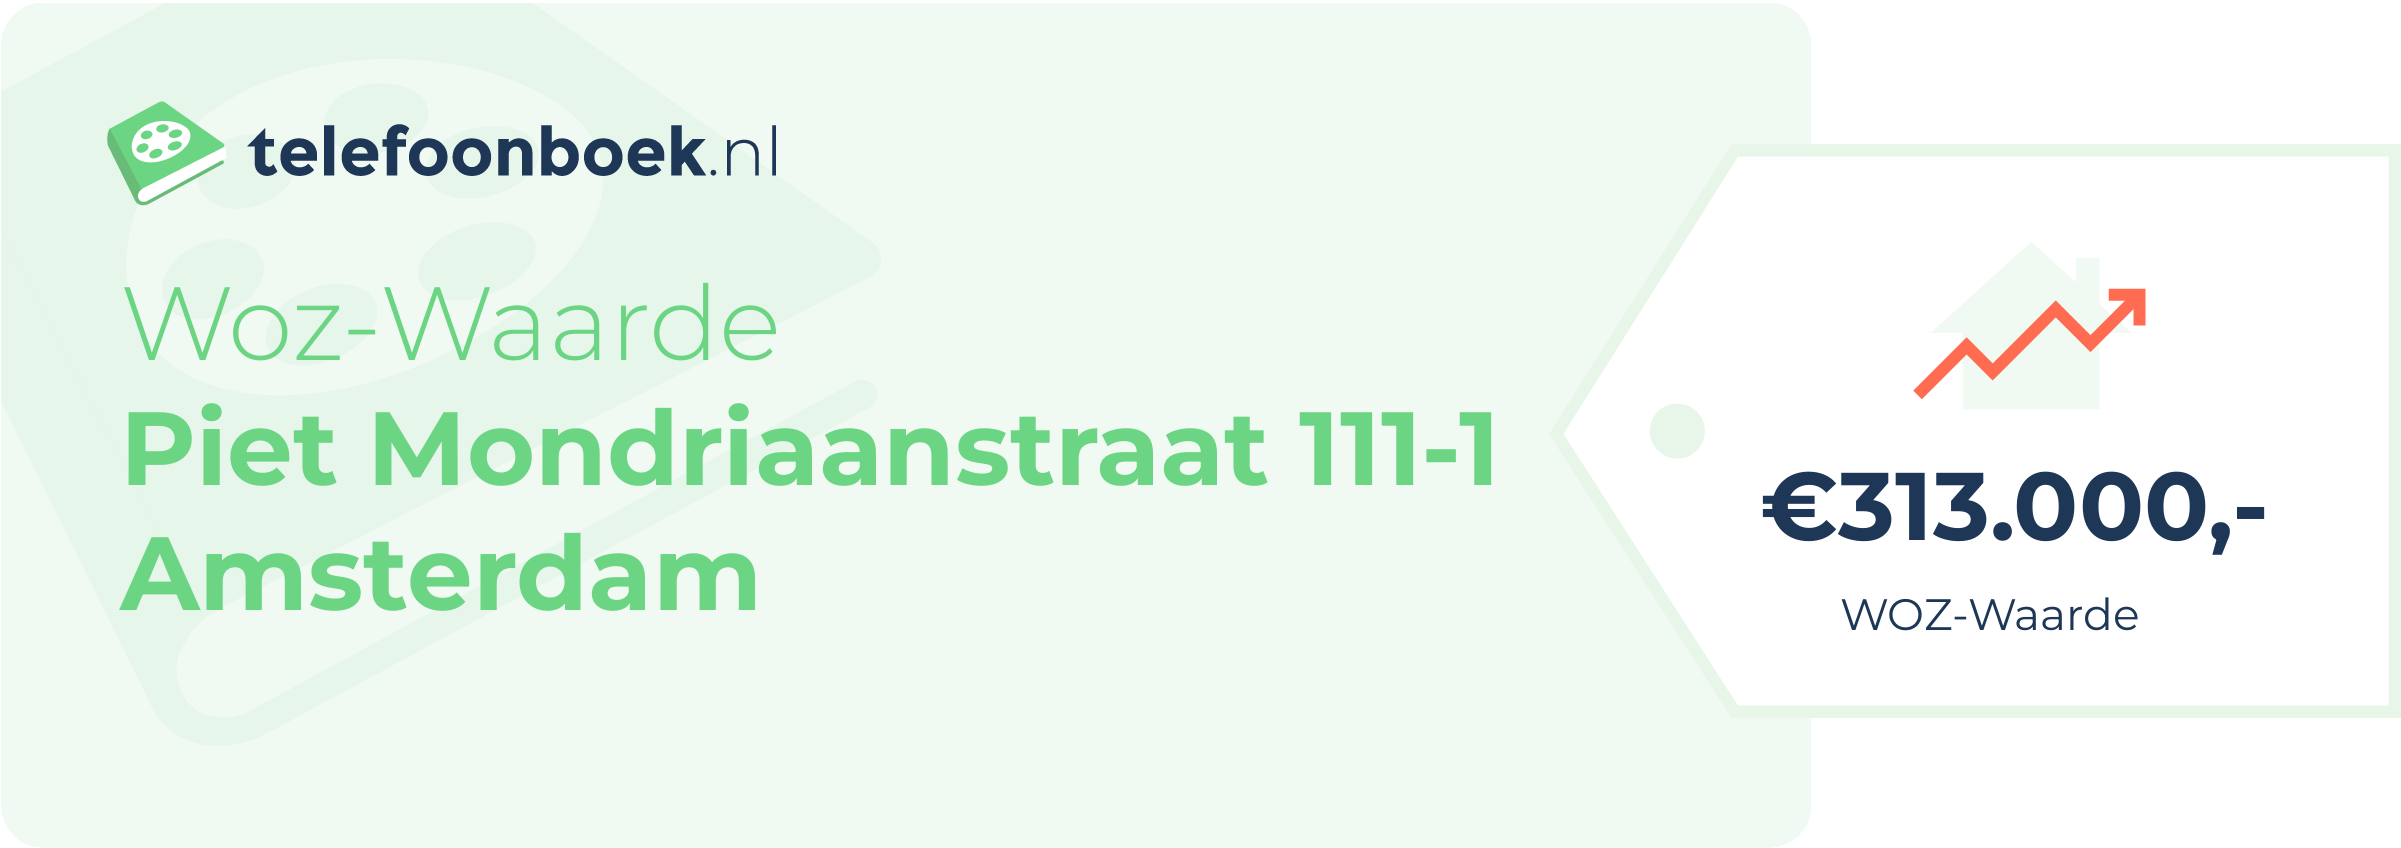 WOZ-waarde Piet Mondriaanstraat 111-1 Amsterdam